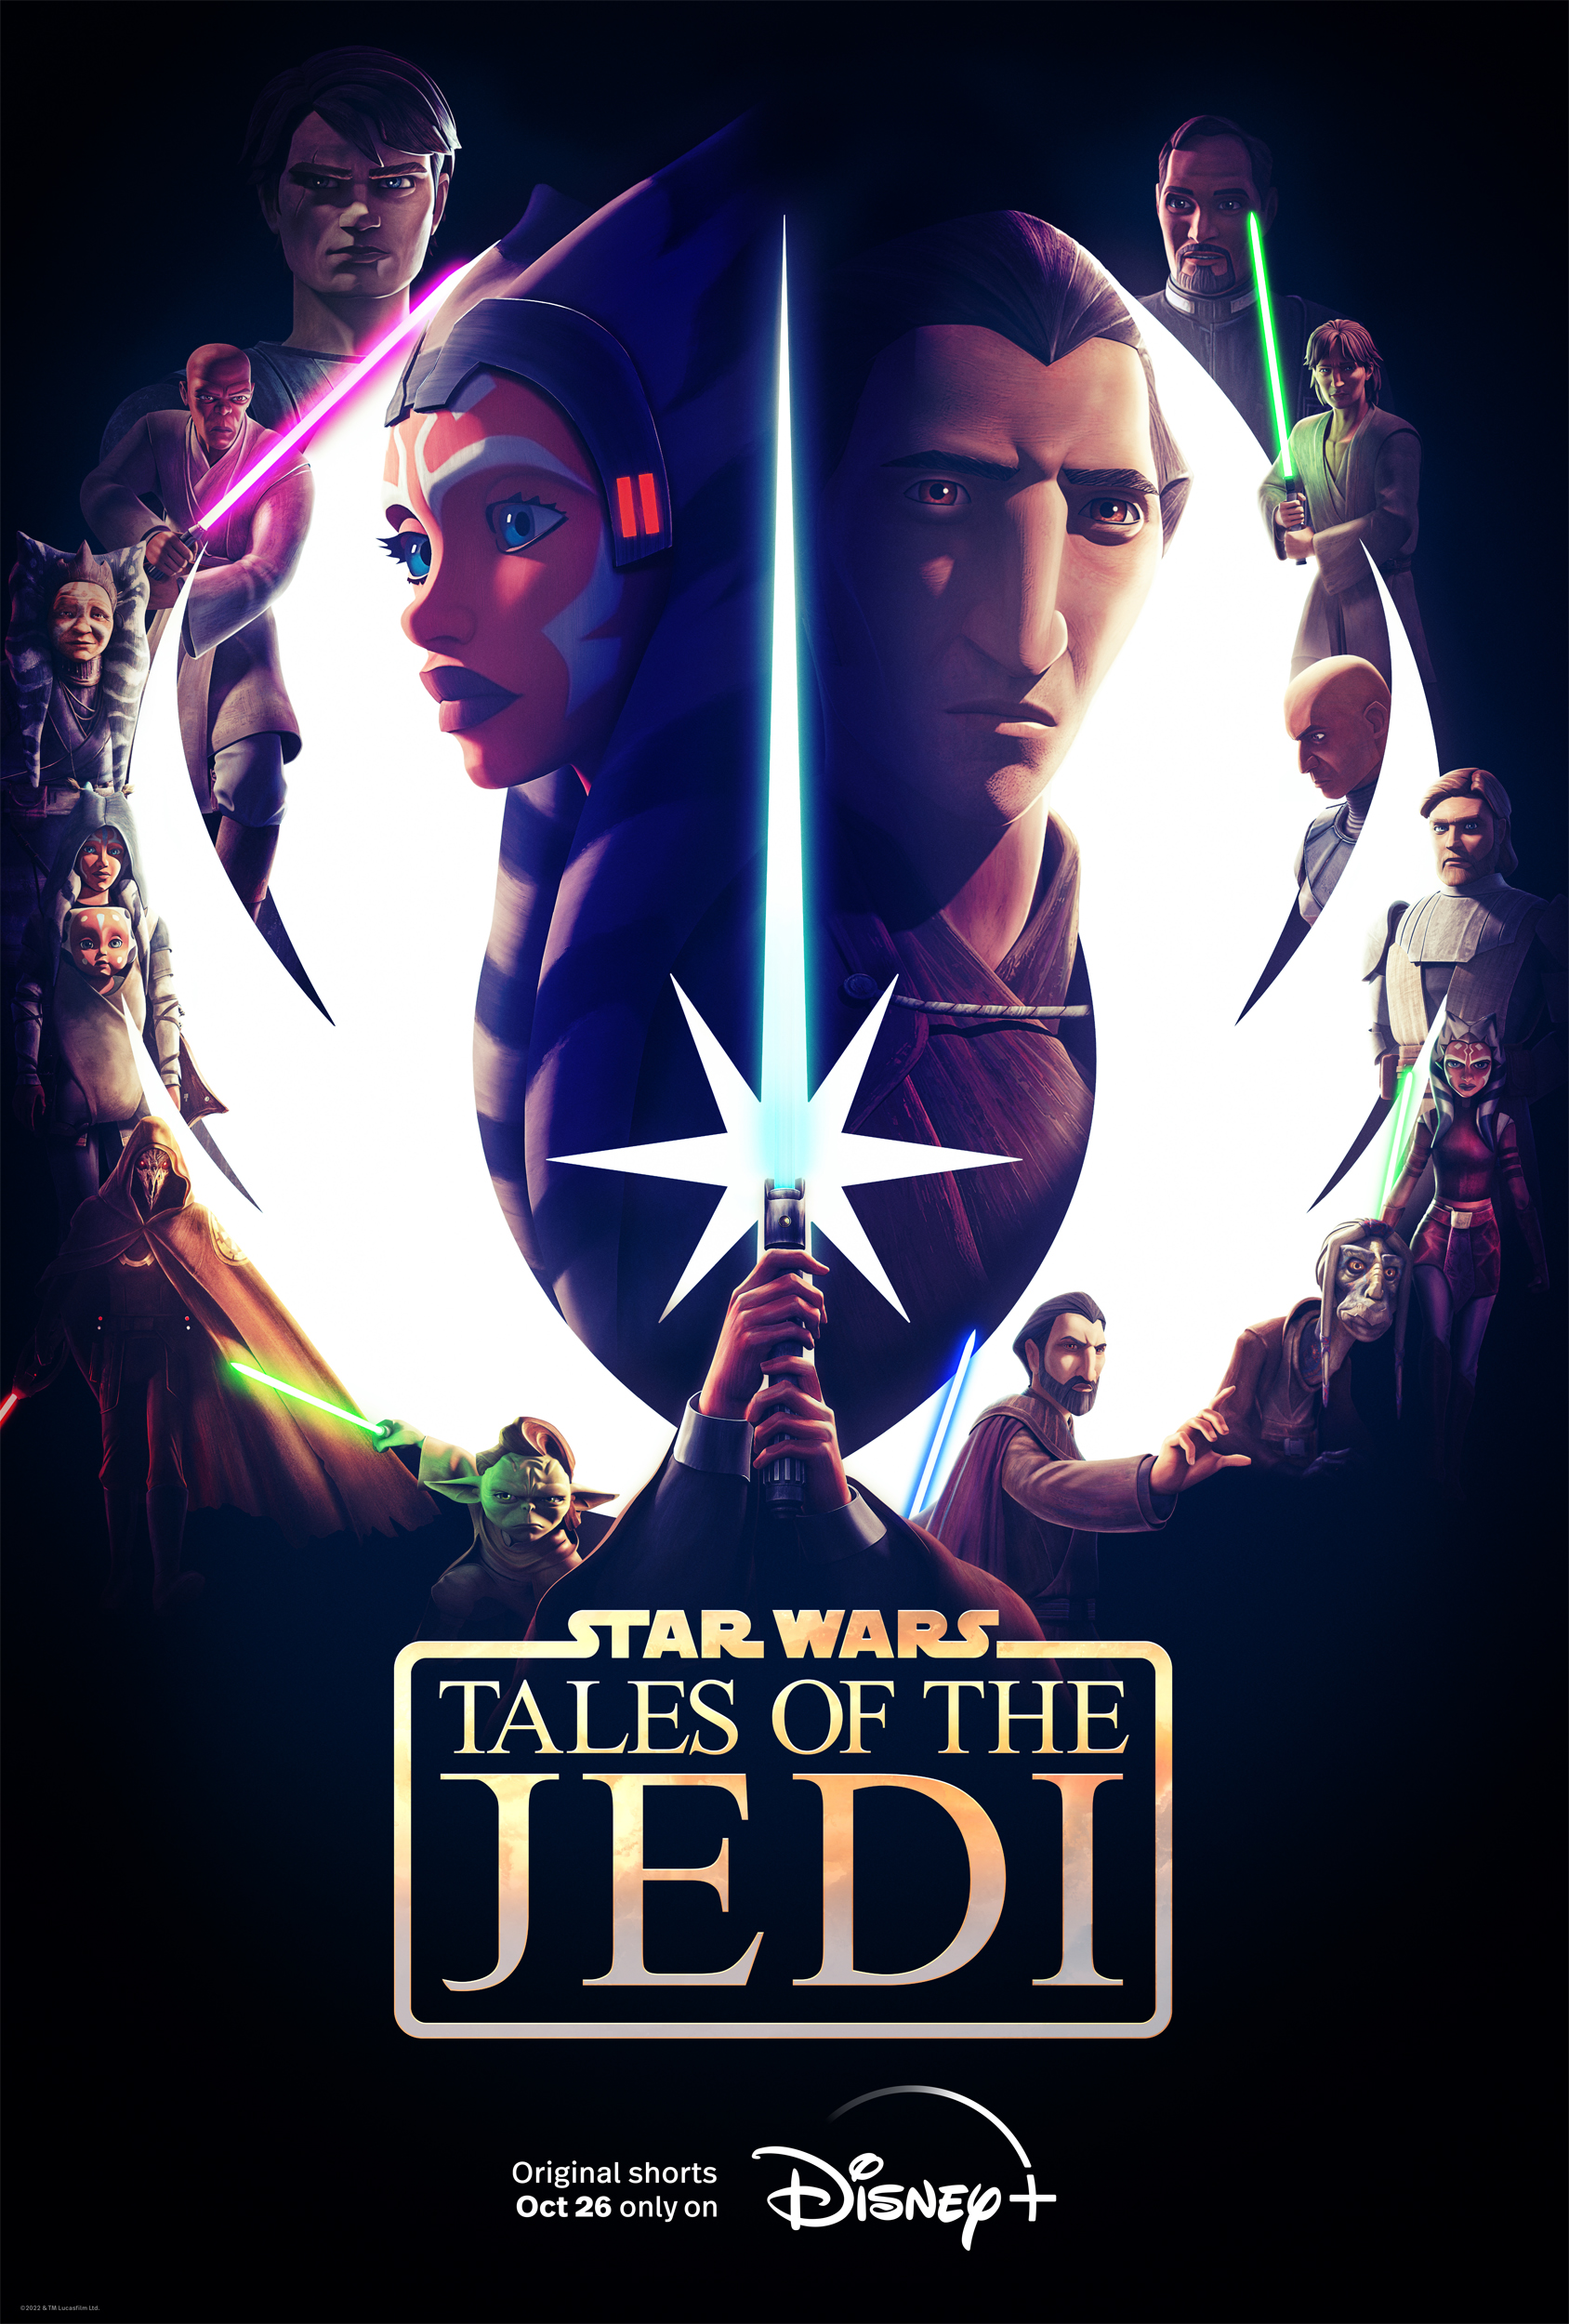 Tales of the Jedi (TV series) - Wikipedia